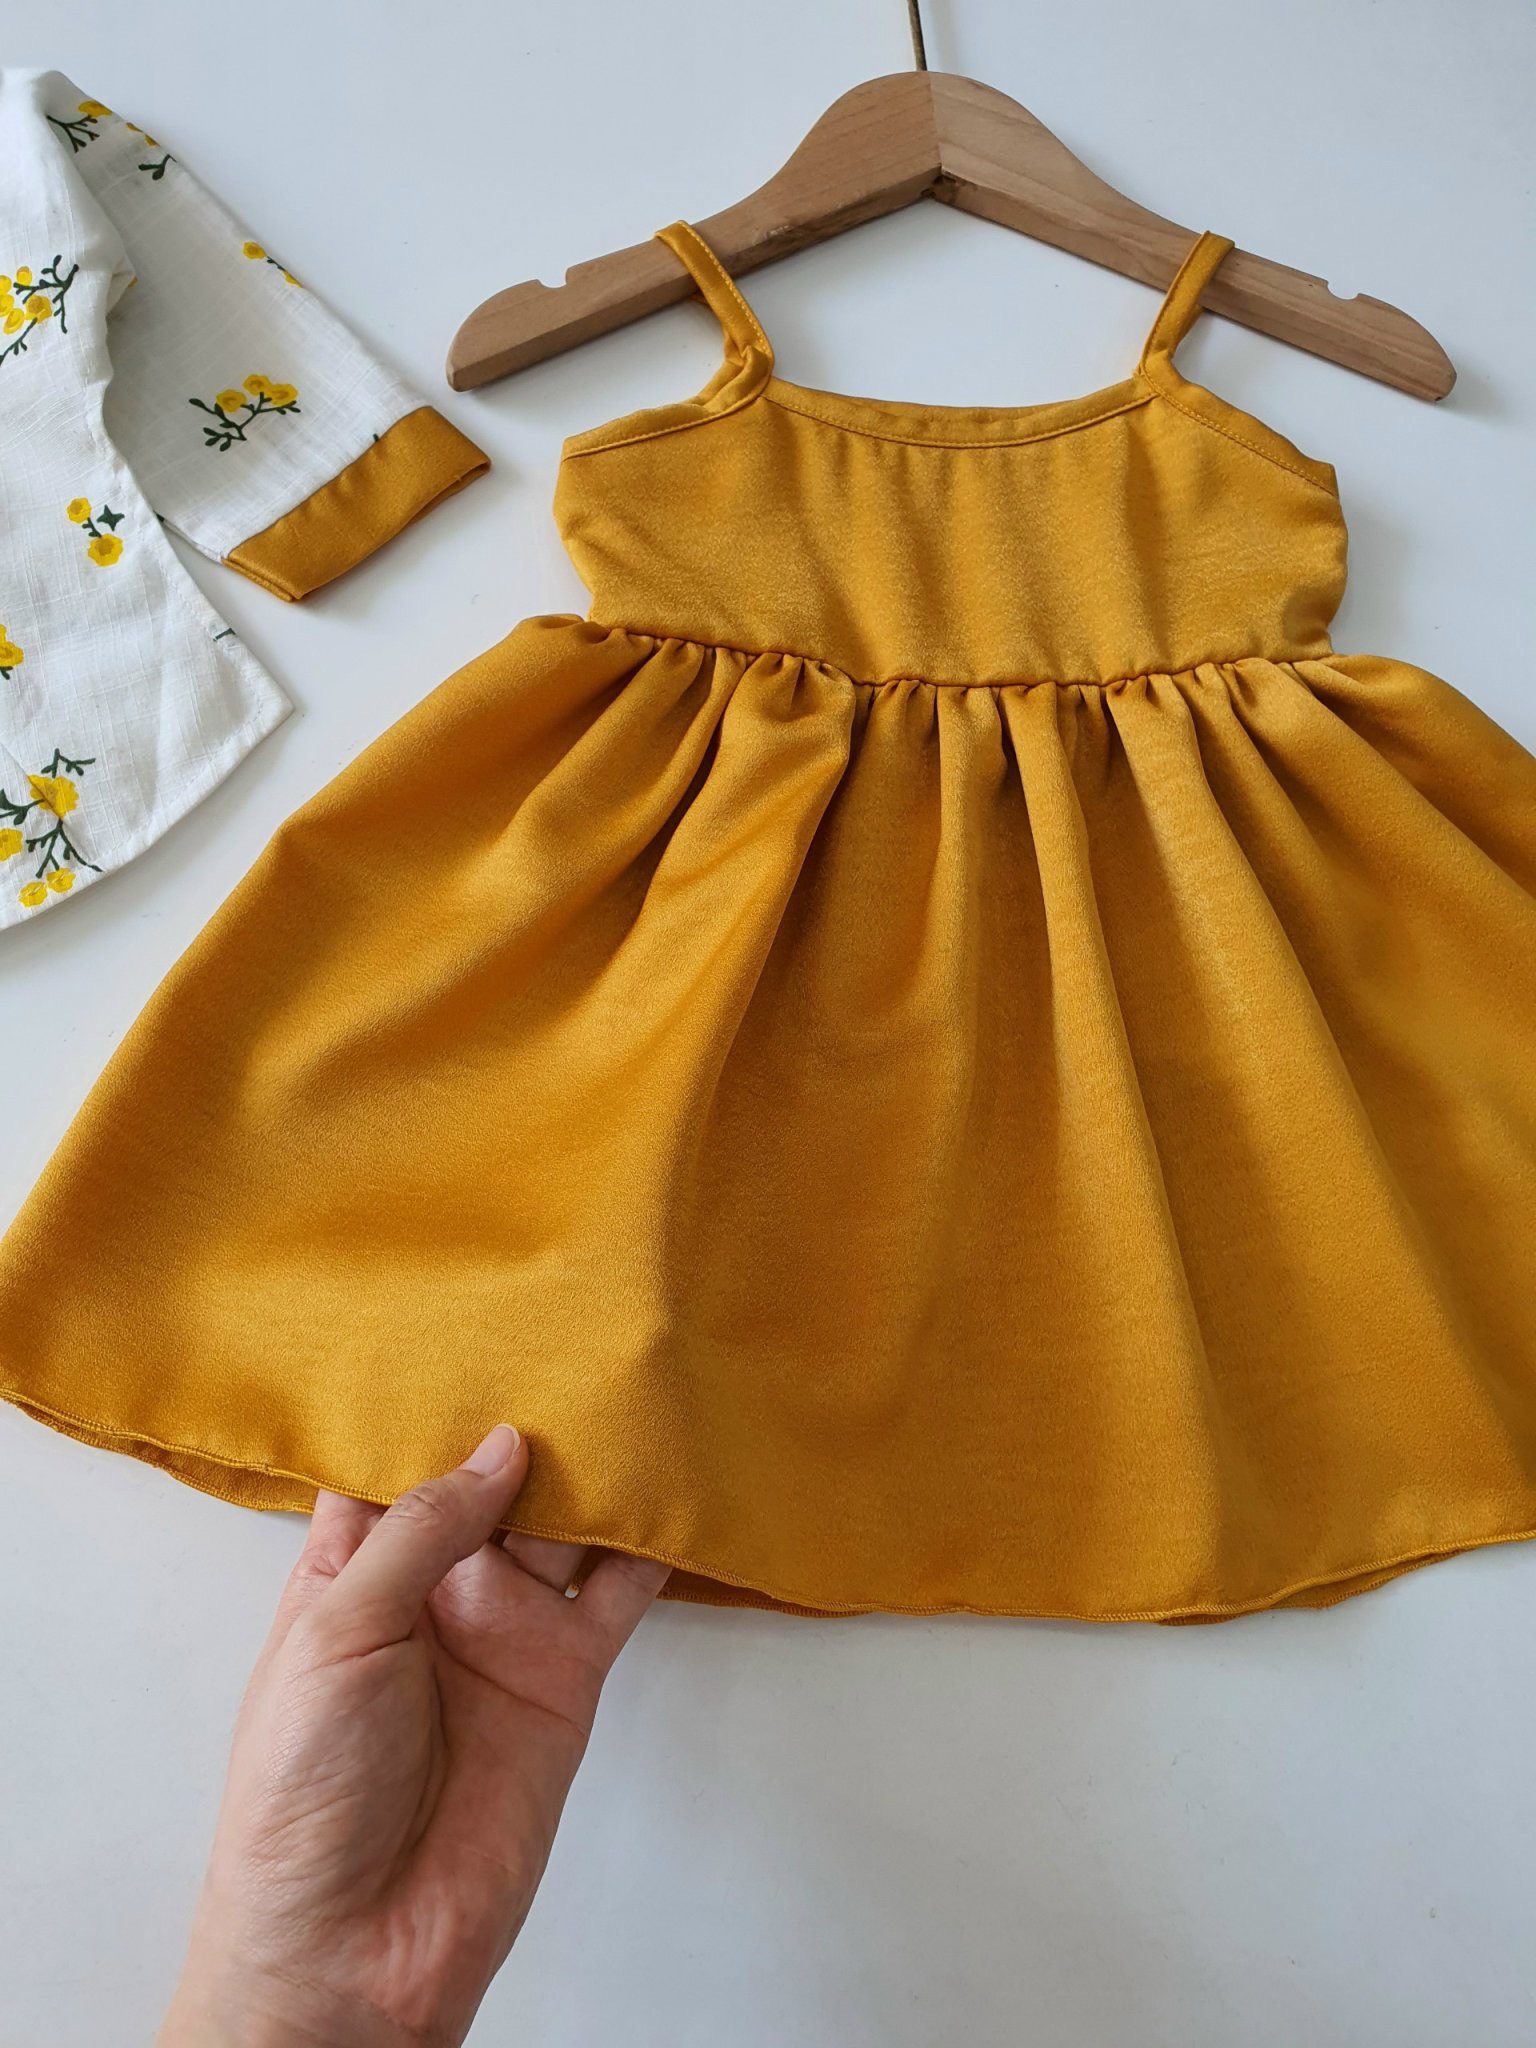 Váy Hanbok Rời NHÍM XÙ KIDS Cho Bé Gái 1 Tuổi Đến 5 Tuổi Chất Lụa Ướt Phối Linen Bột - V066